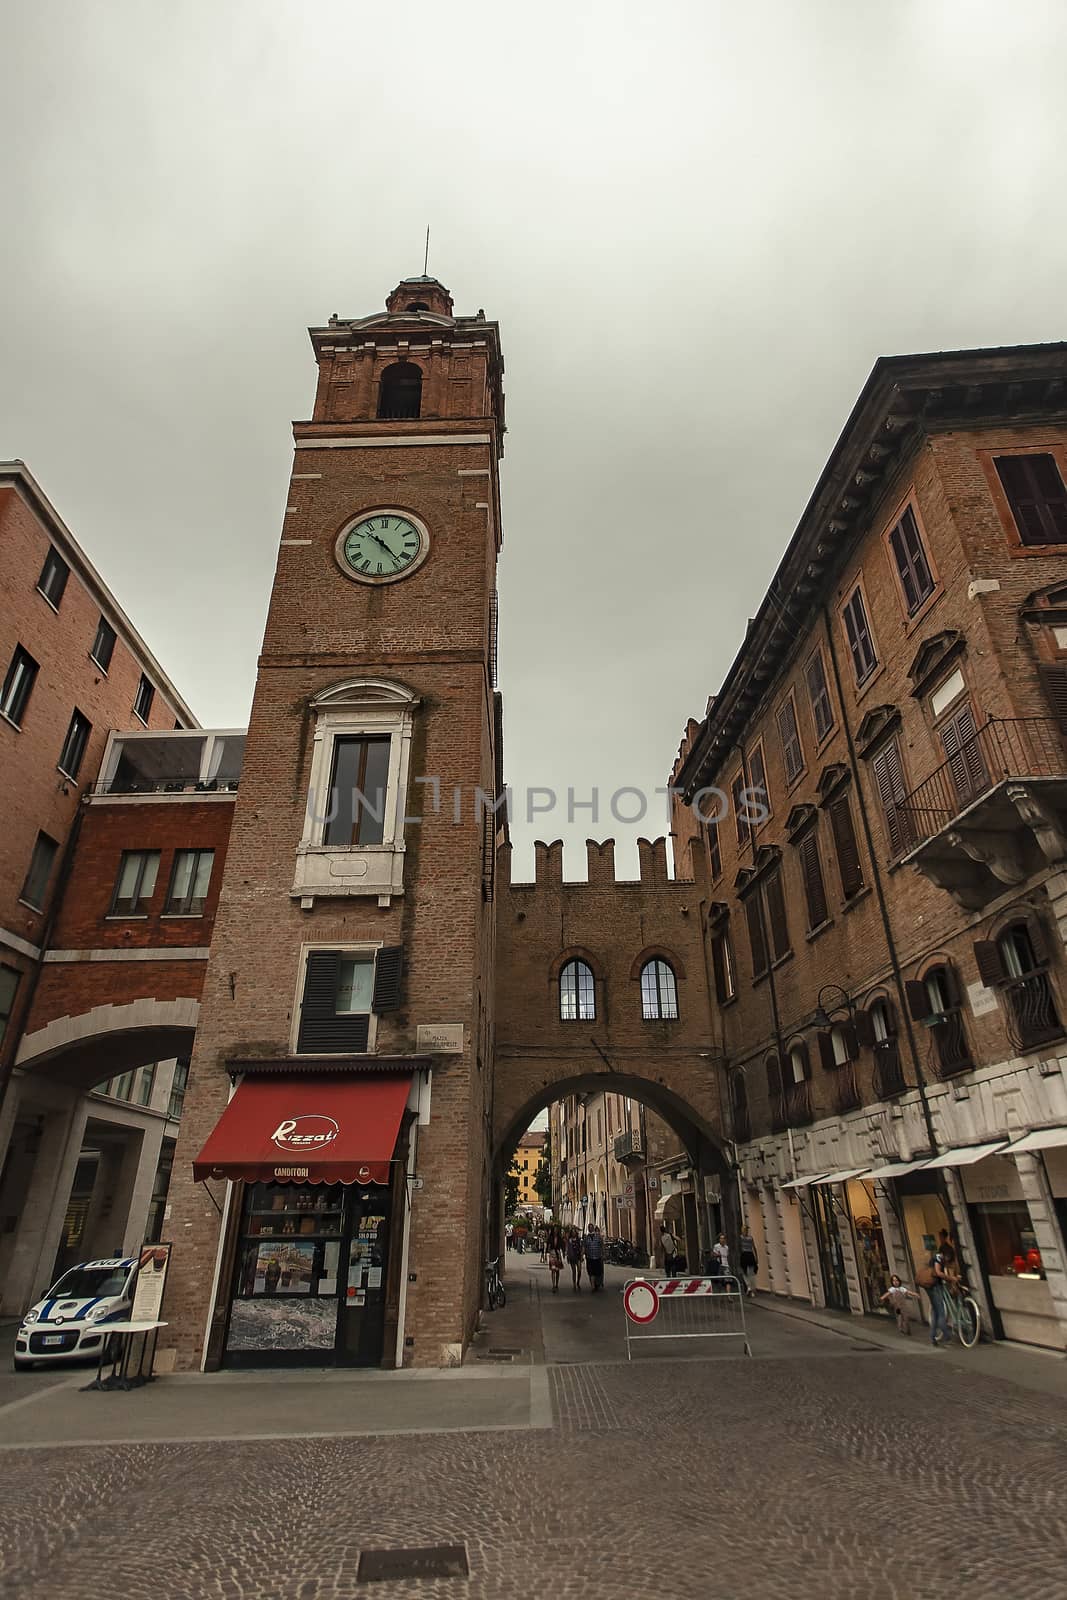 Clock Tower from below in Ferrara in Italy by pippocarlot